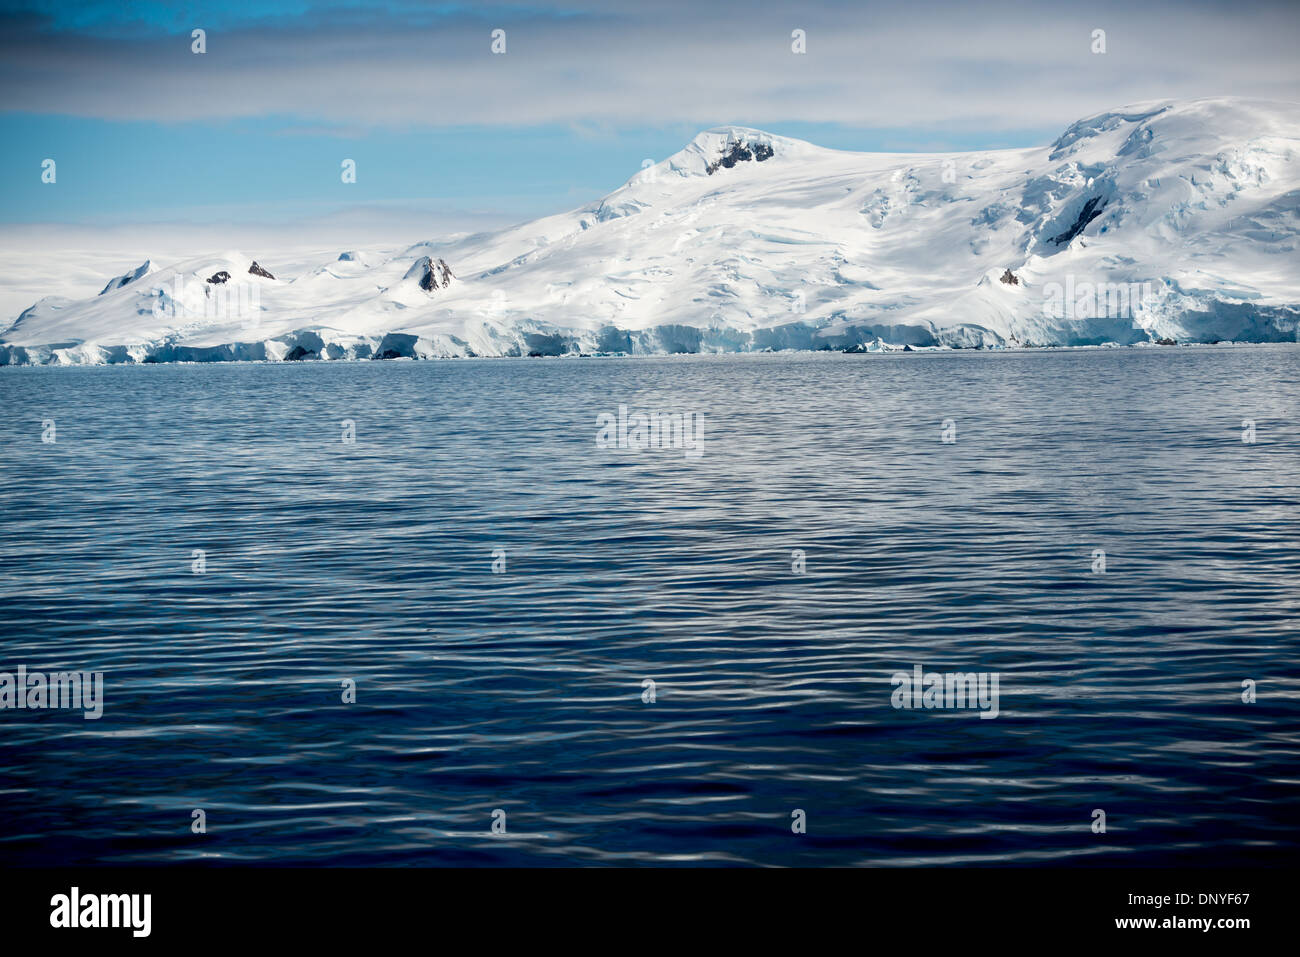 Antartide - neve e ghiaccio sulle montagne ricoperte di la linea di costa lungo il lato occidentale della penisola antartica. Foto Stock